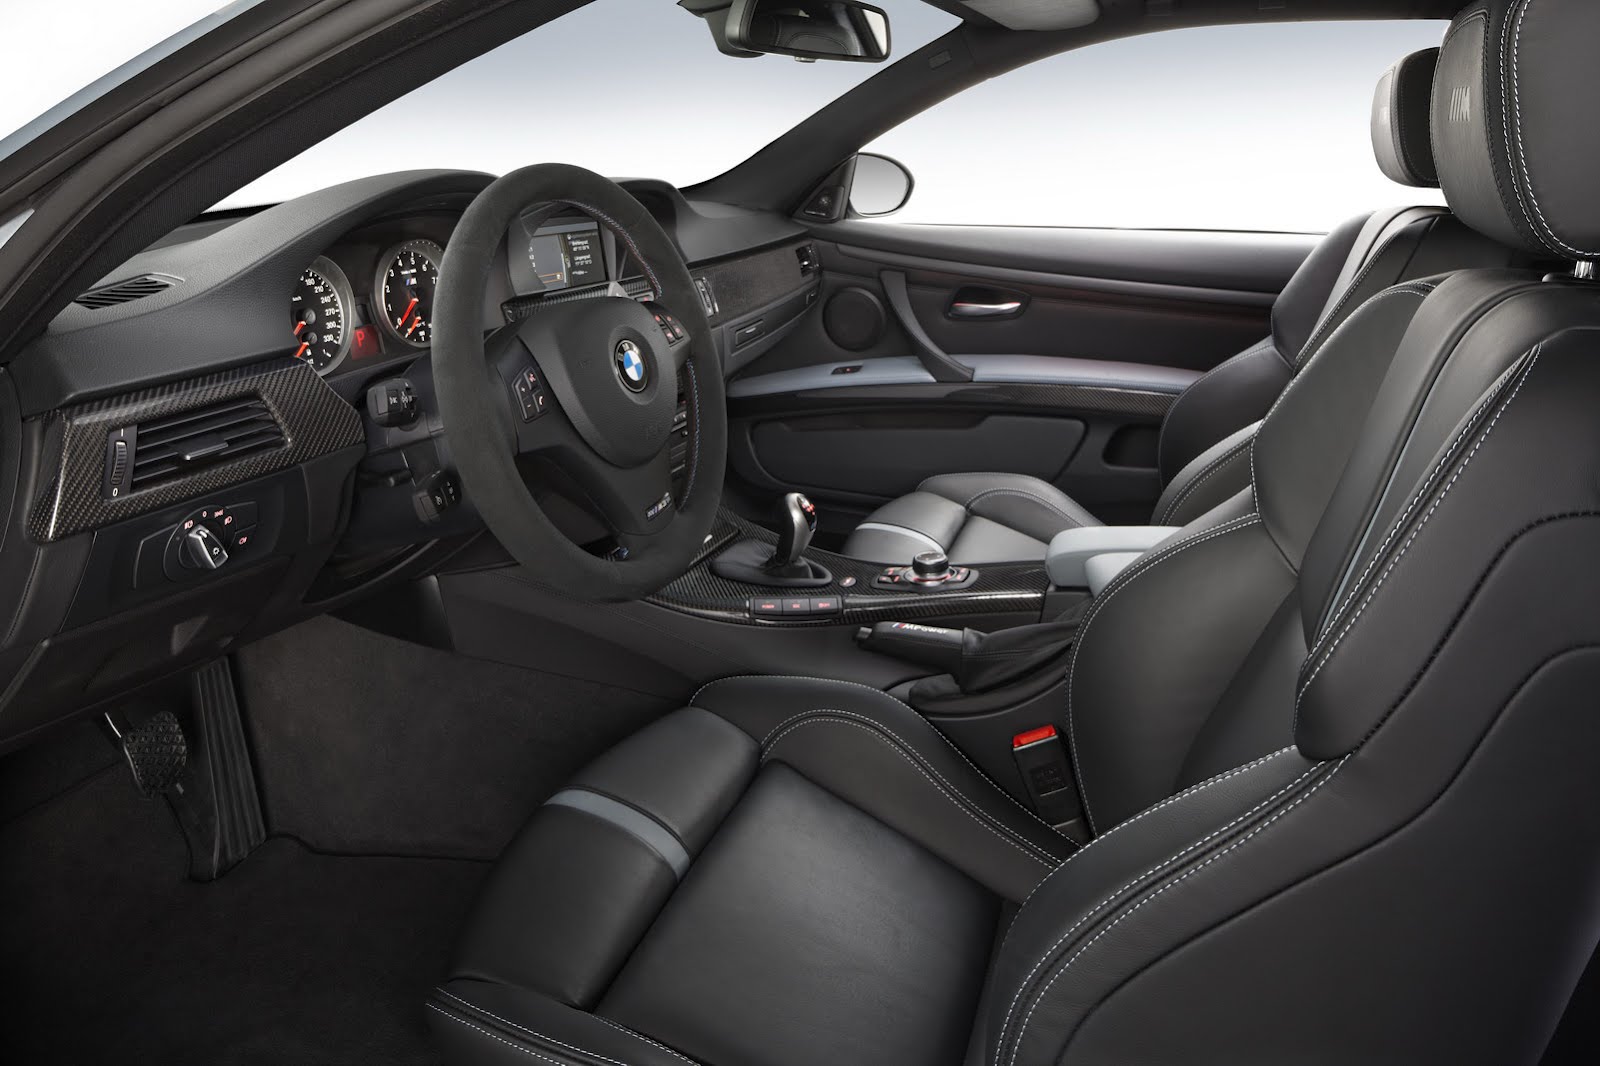 BMW M3 Coupé Frozen Silver Edition, una edición especial sólo para Reino Unido